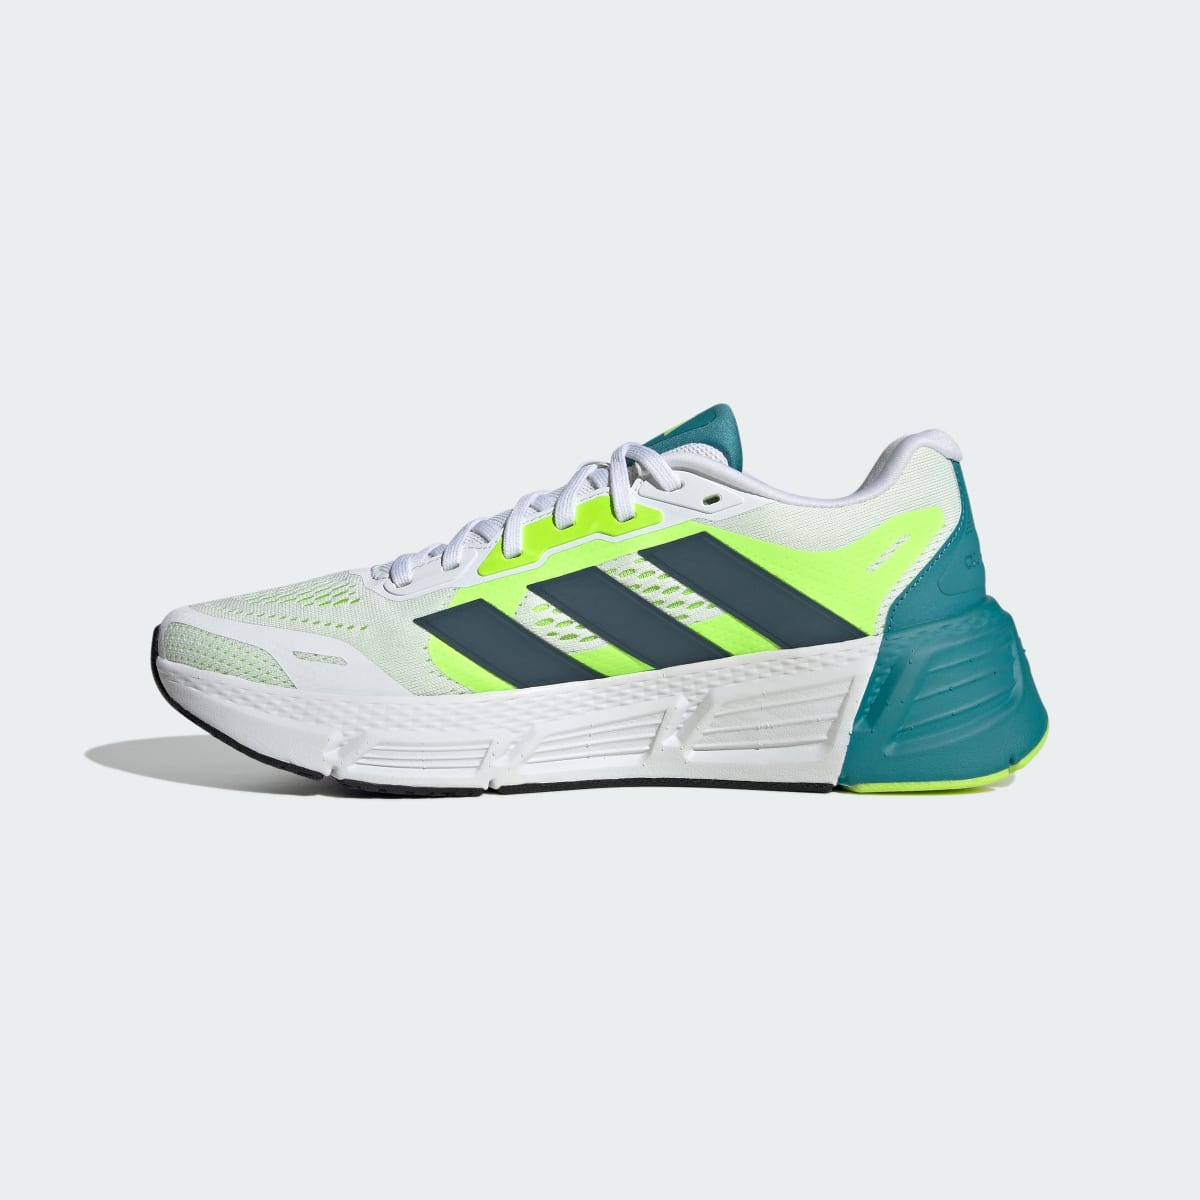 Adidas Questar Ayakkabı. 10